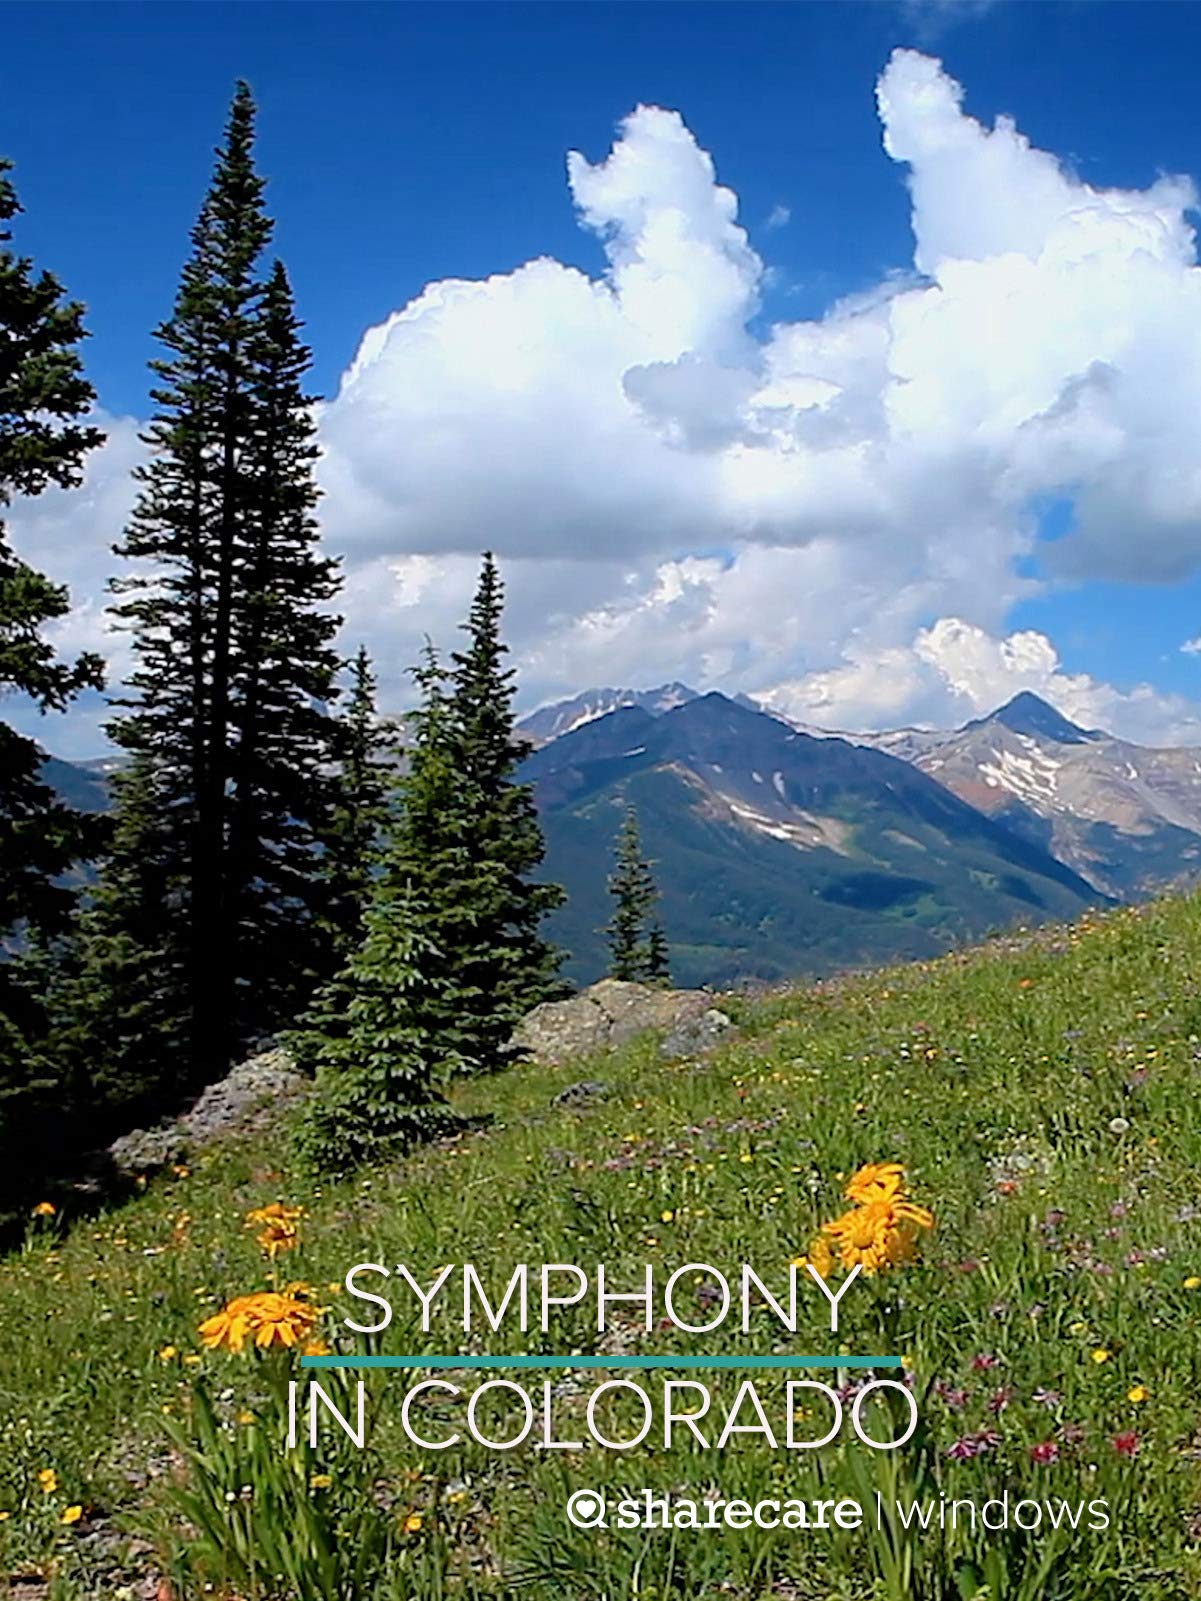 Symphony in Colorado